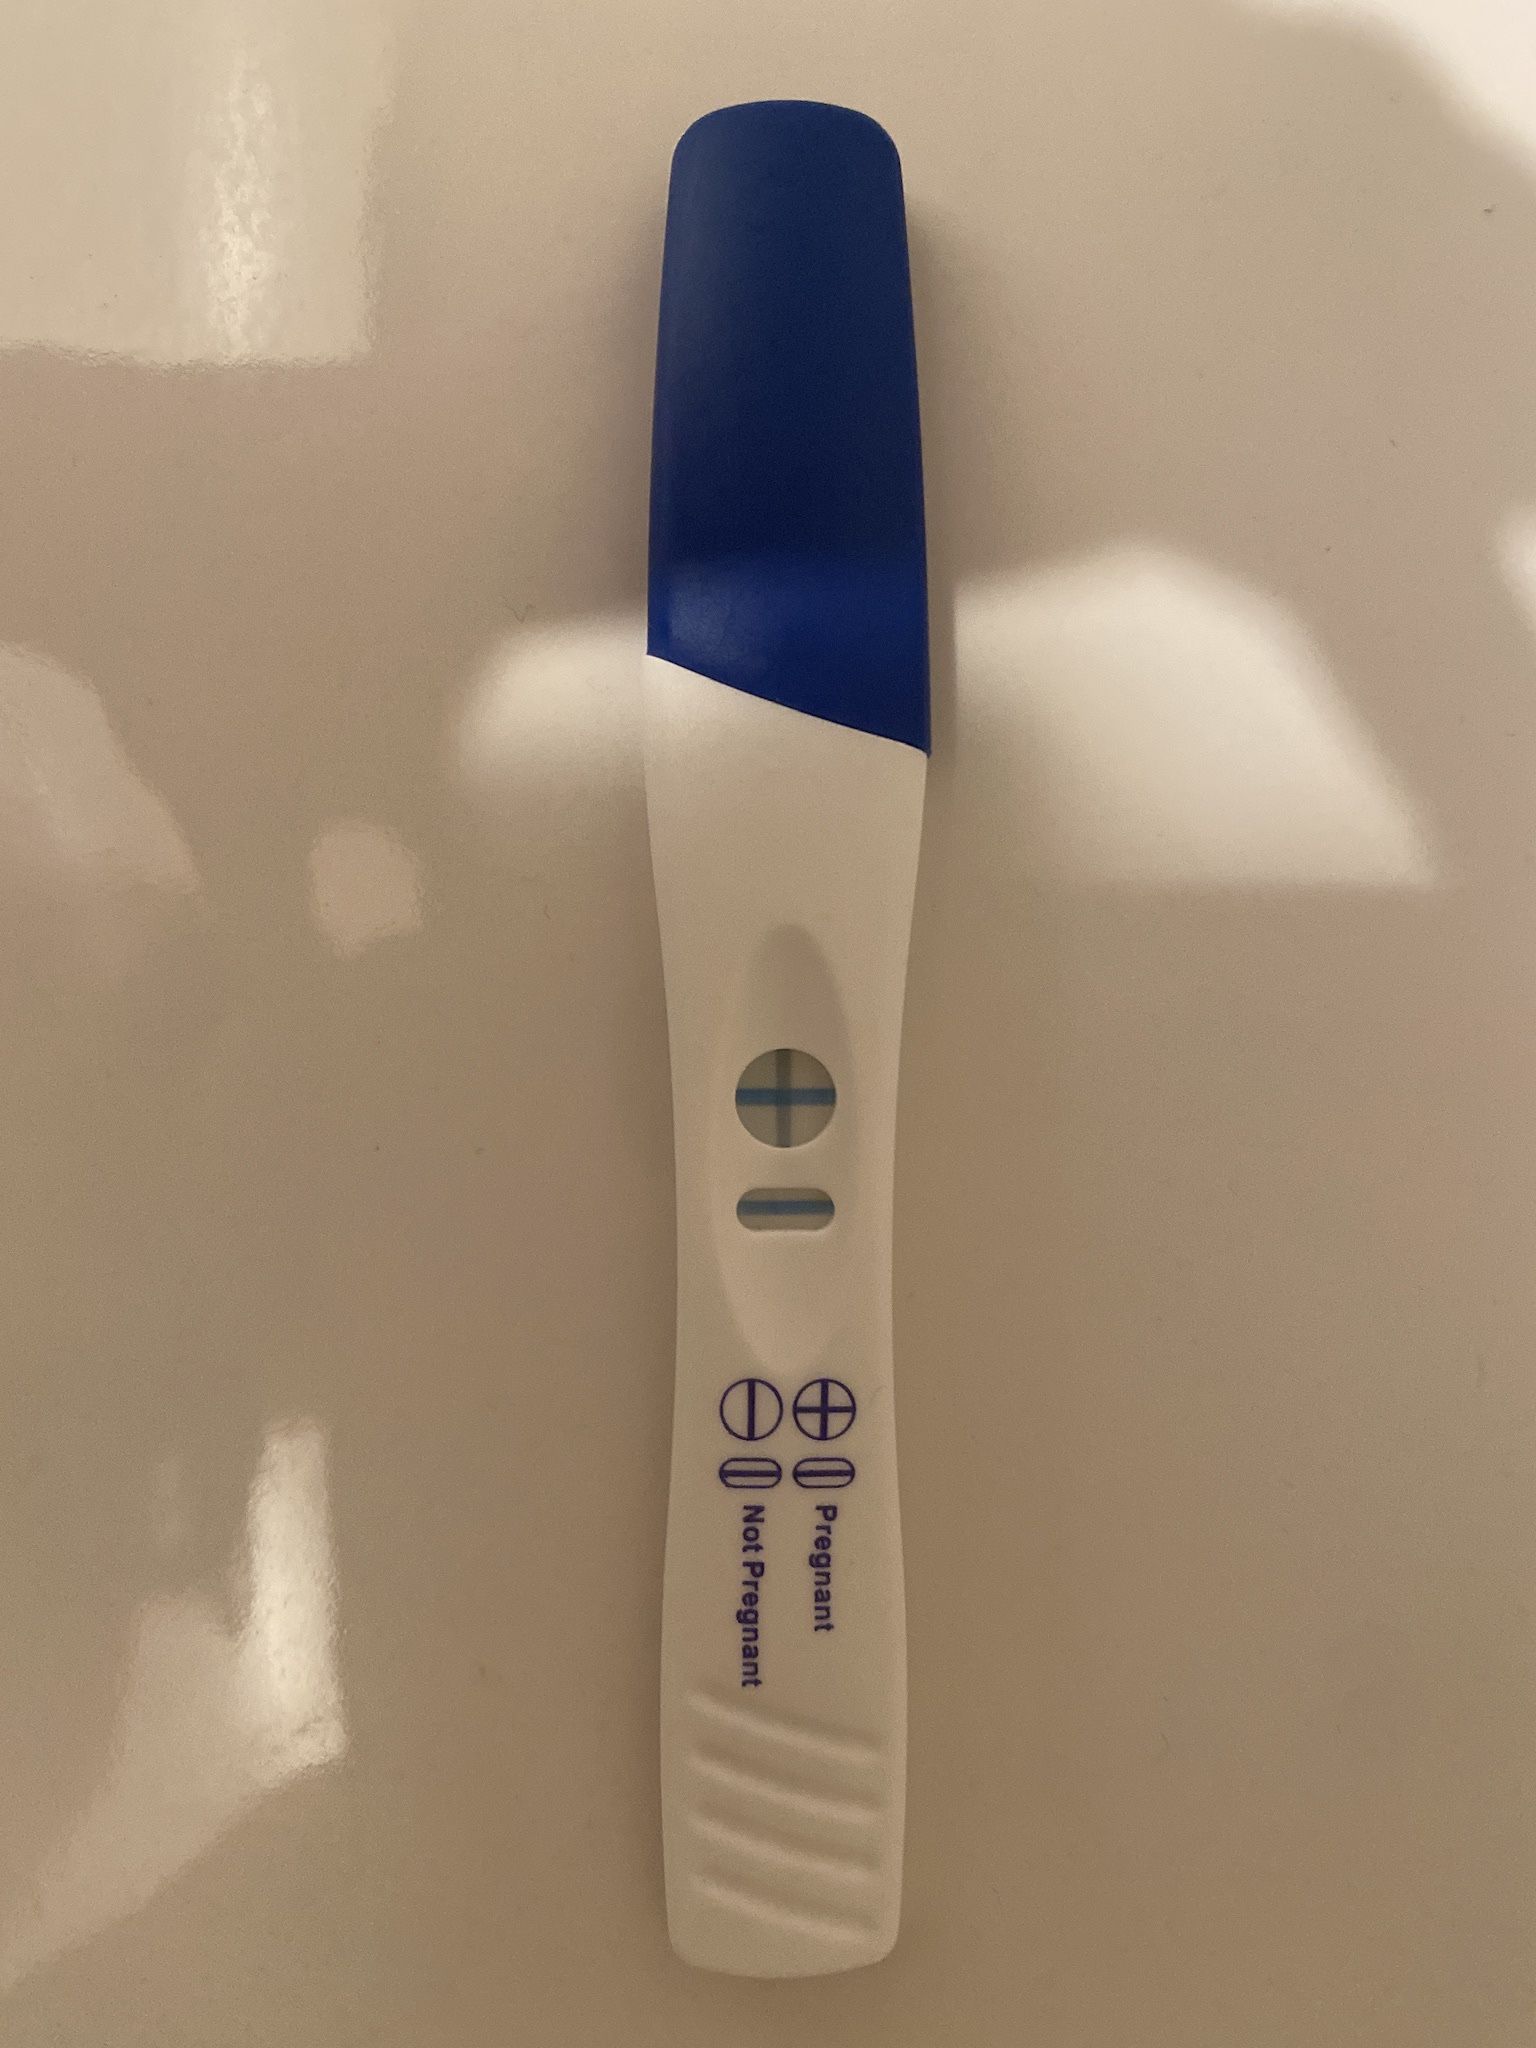 Positive Pregnancy Test For Pranks